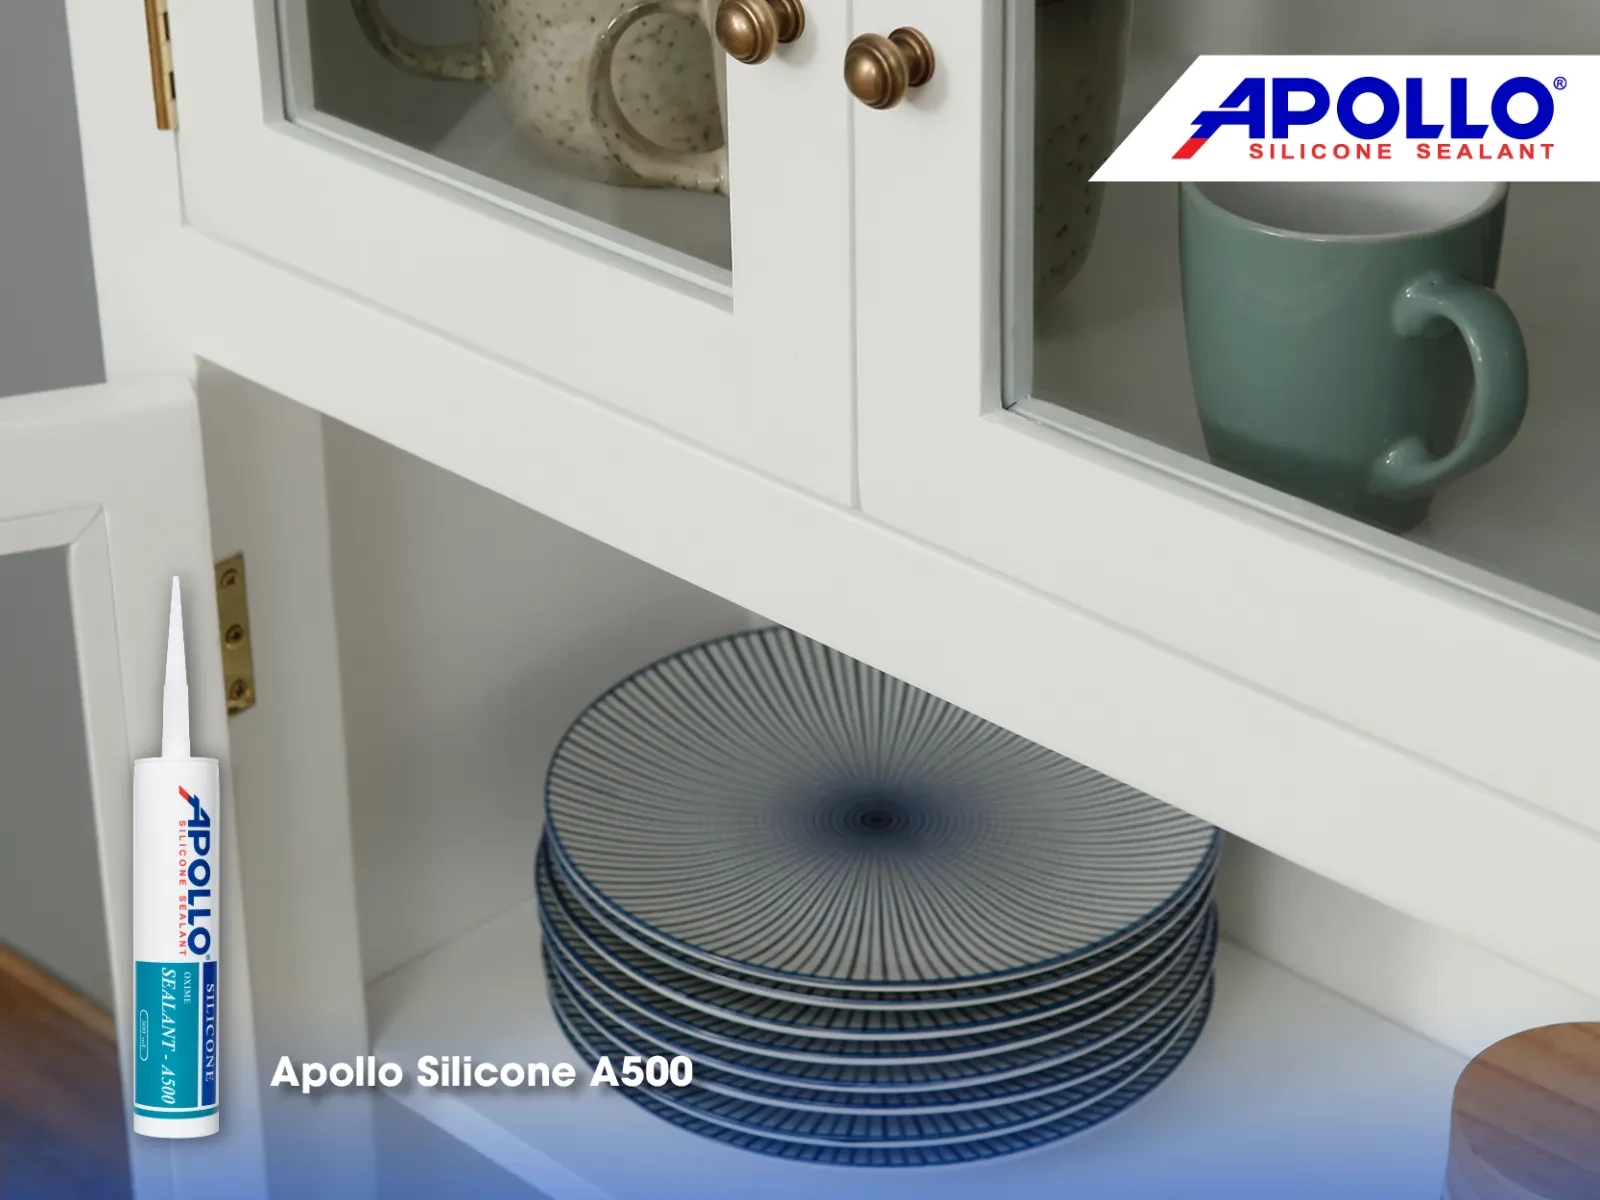 Cửa tủ chén thường bị tác động lực do kéo mở thường xuyên vì vậy cần chất trám có độ đàn hồi cao như Apollo A500